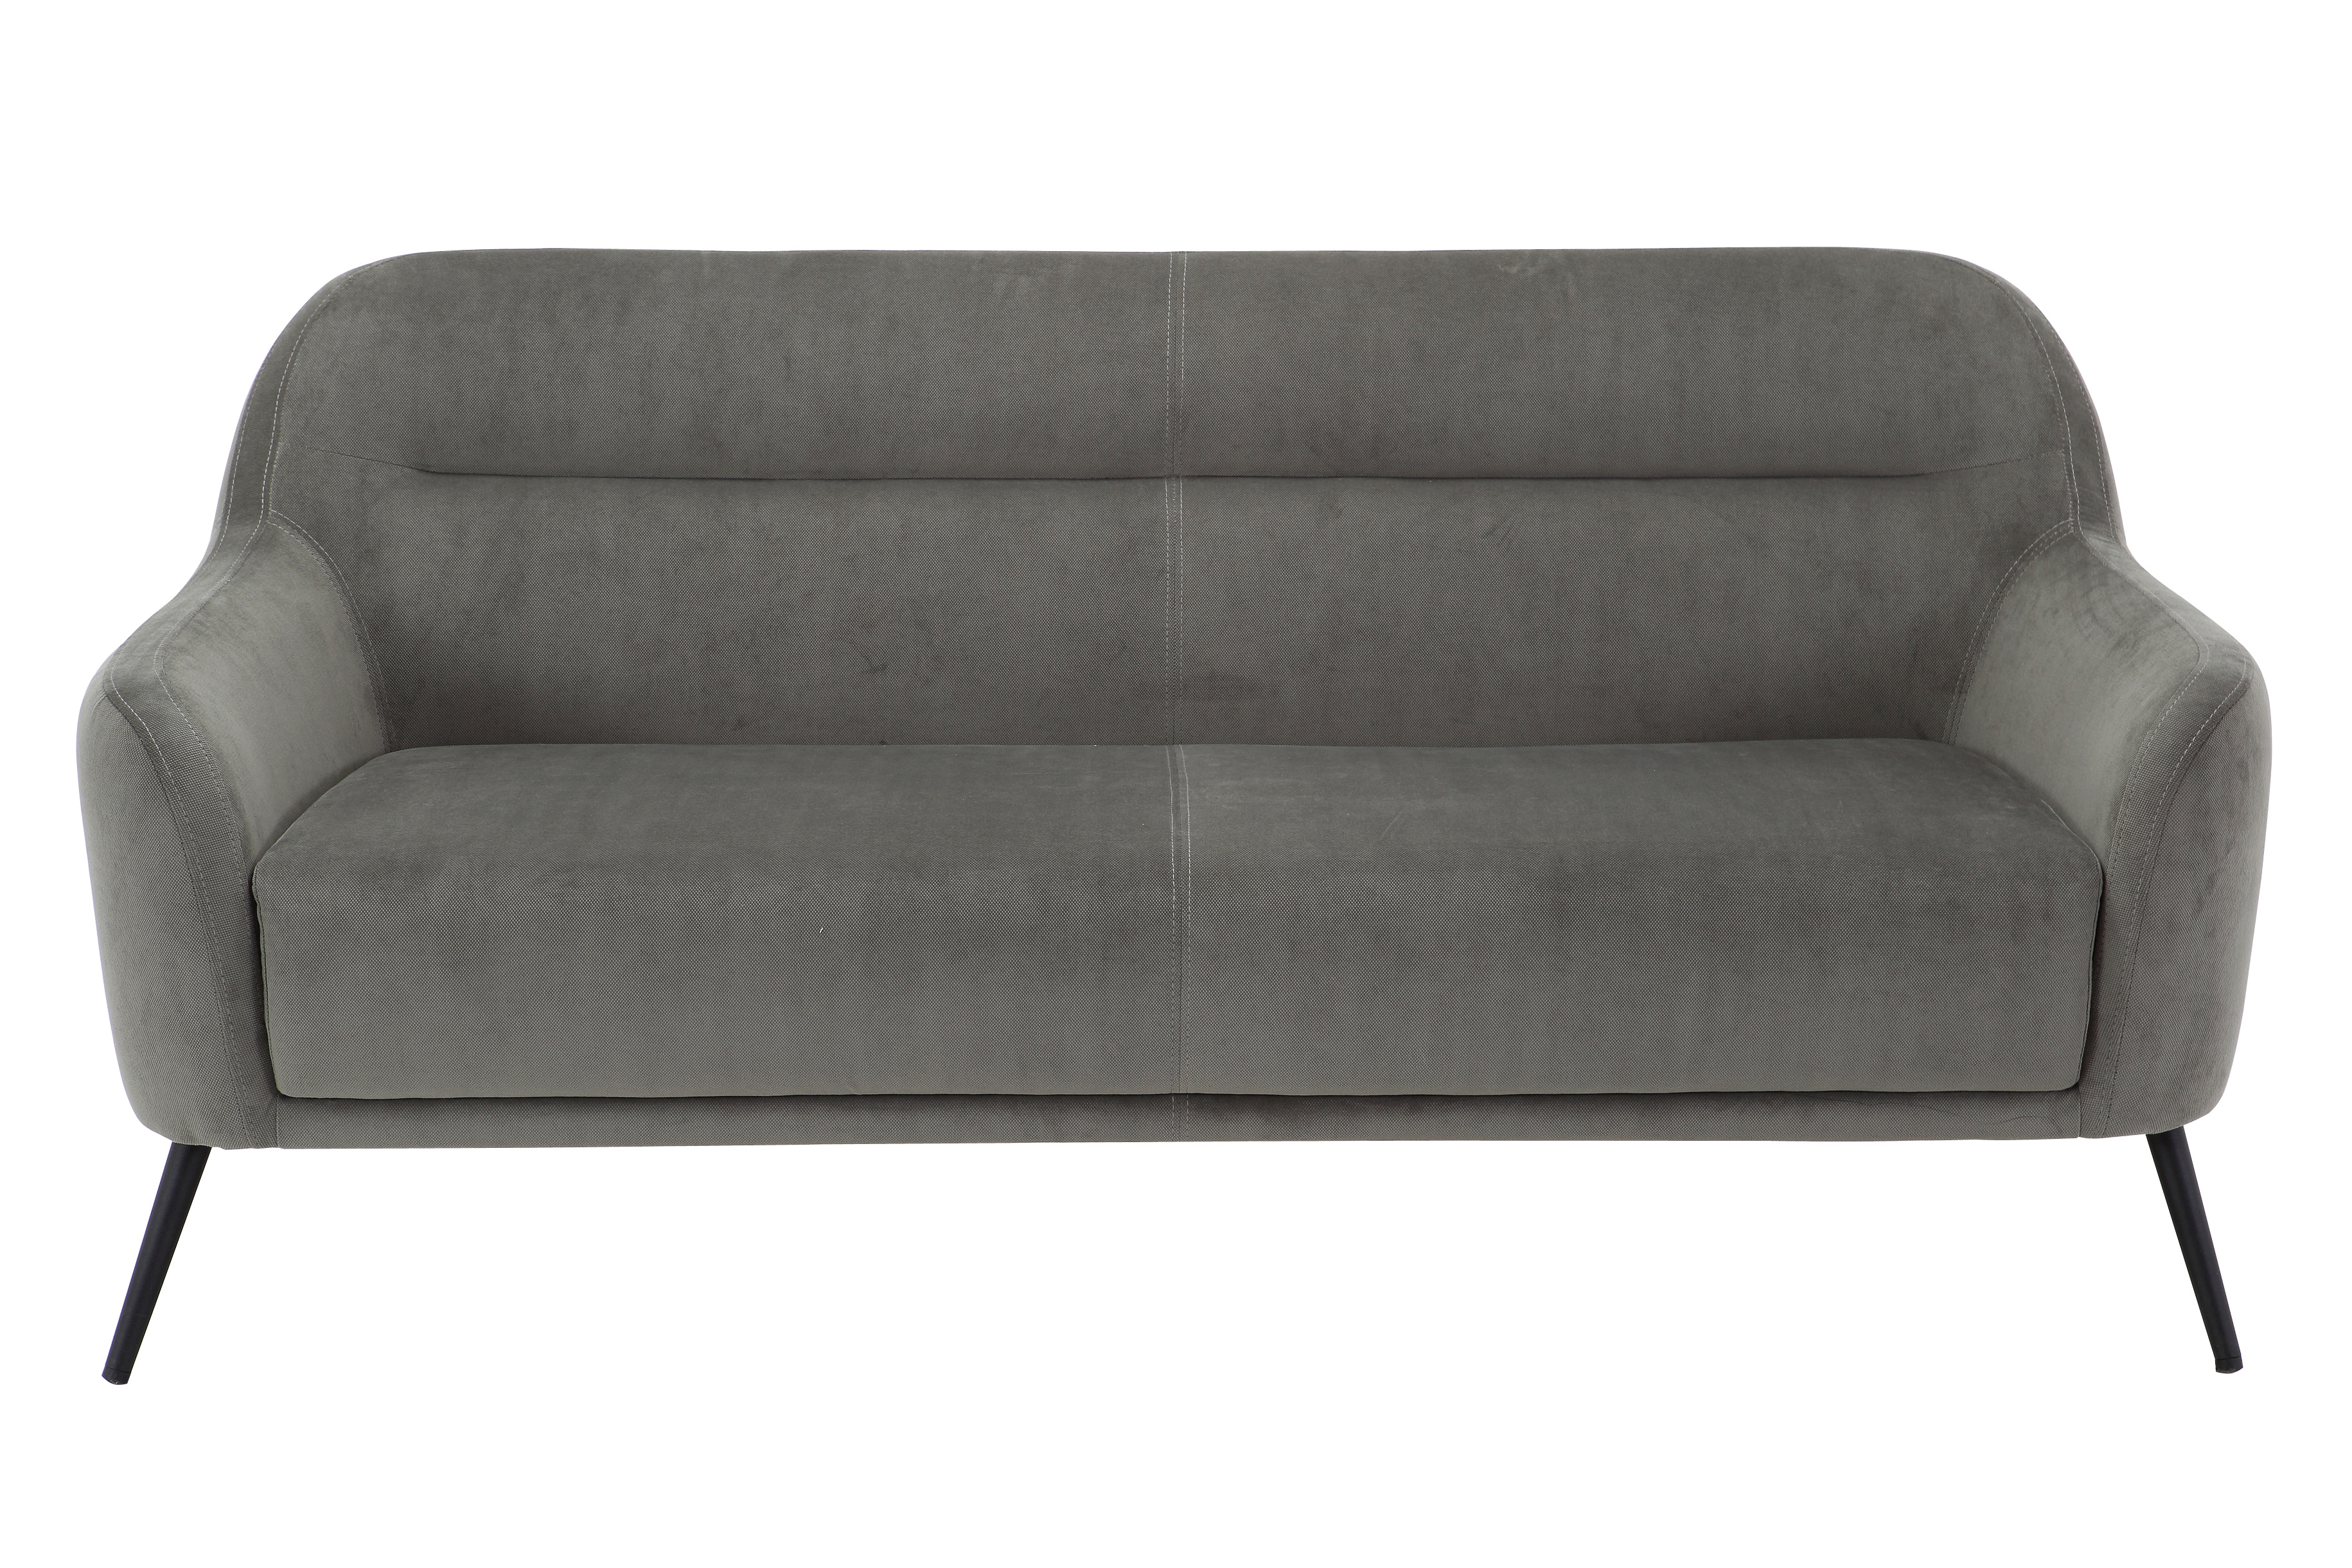 CH-193159 Stationary sofa